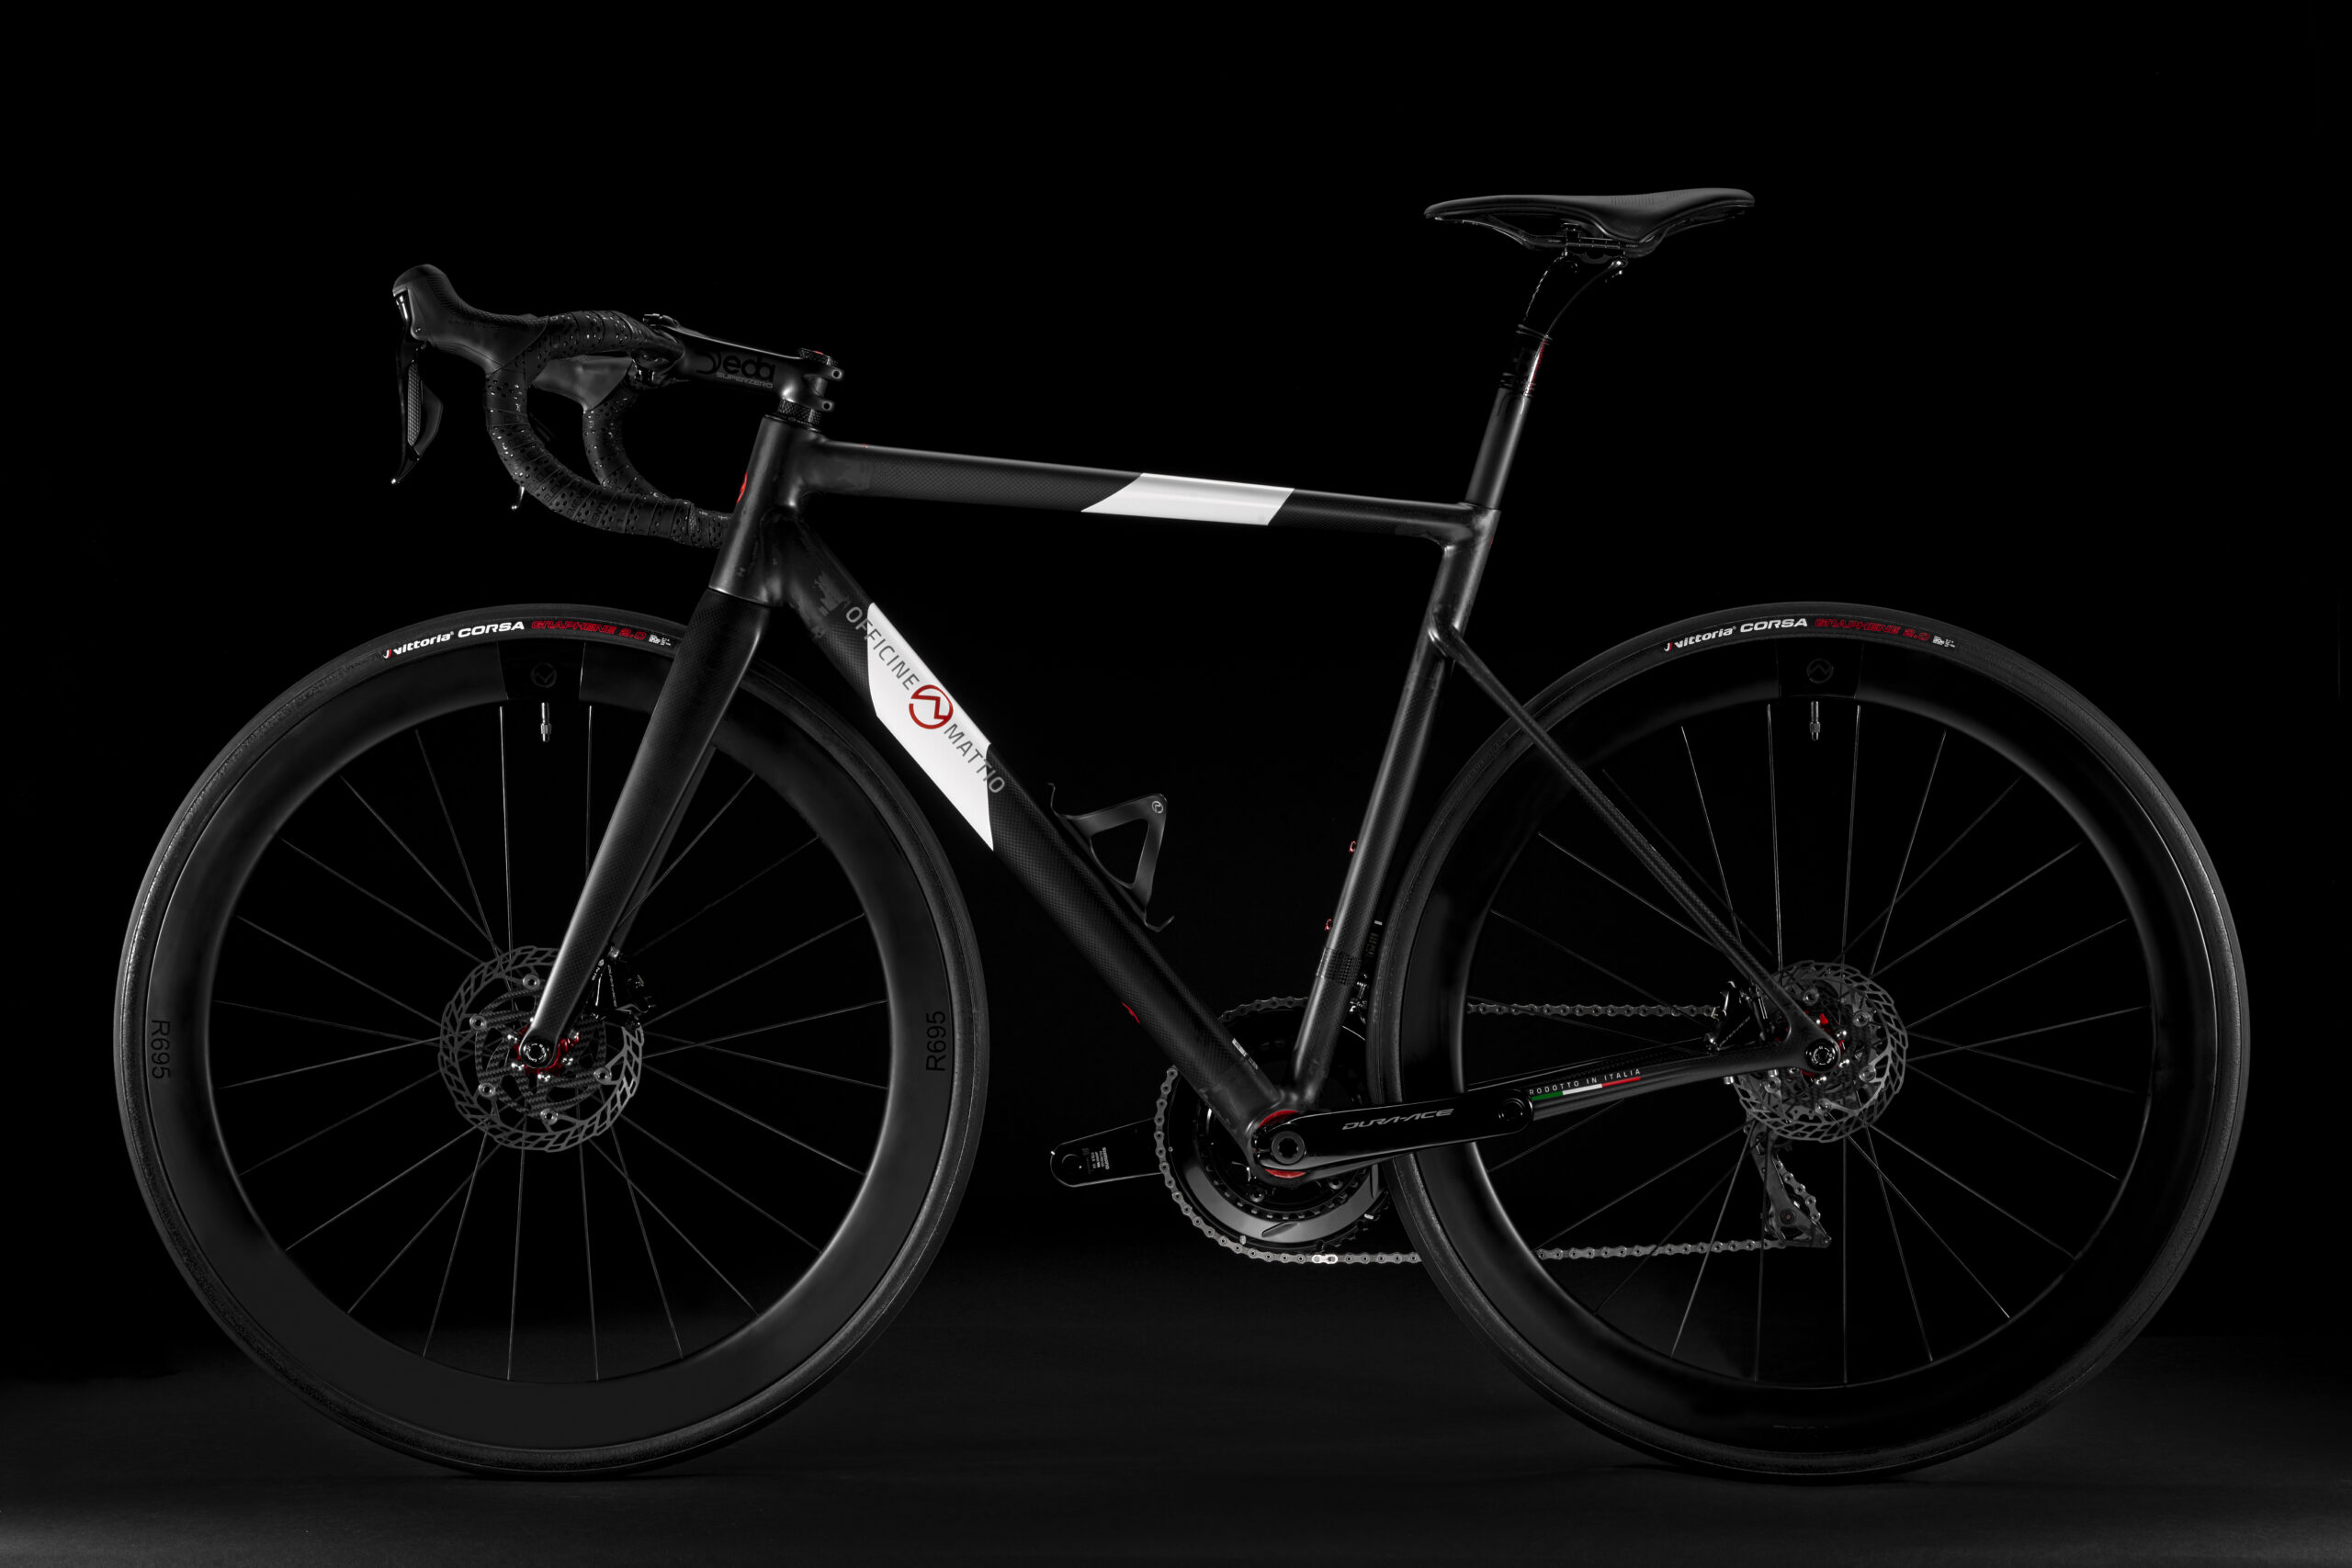 Rispesa laterale della bicicletta Officine Mattio modello Lemma 2.0 colorazione nero e bianco